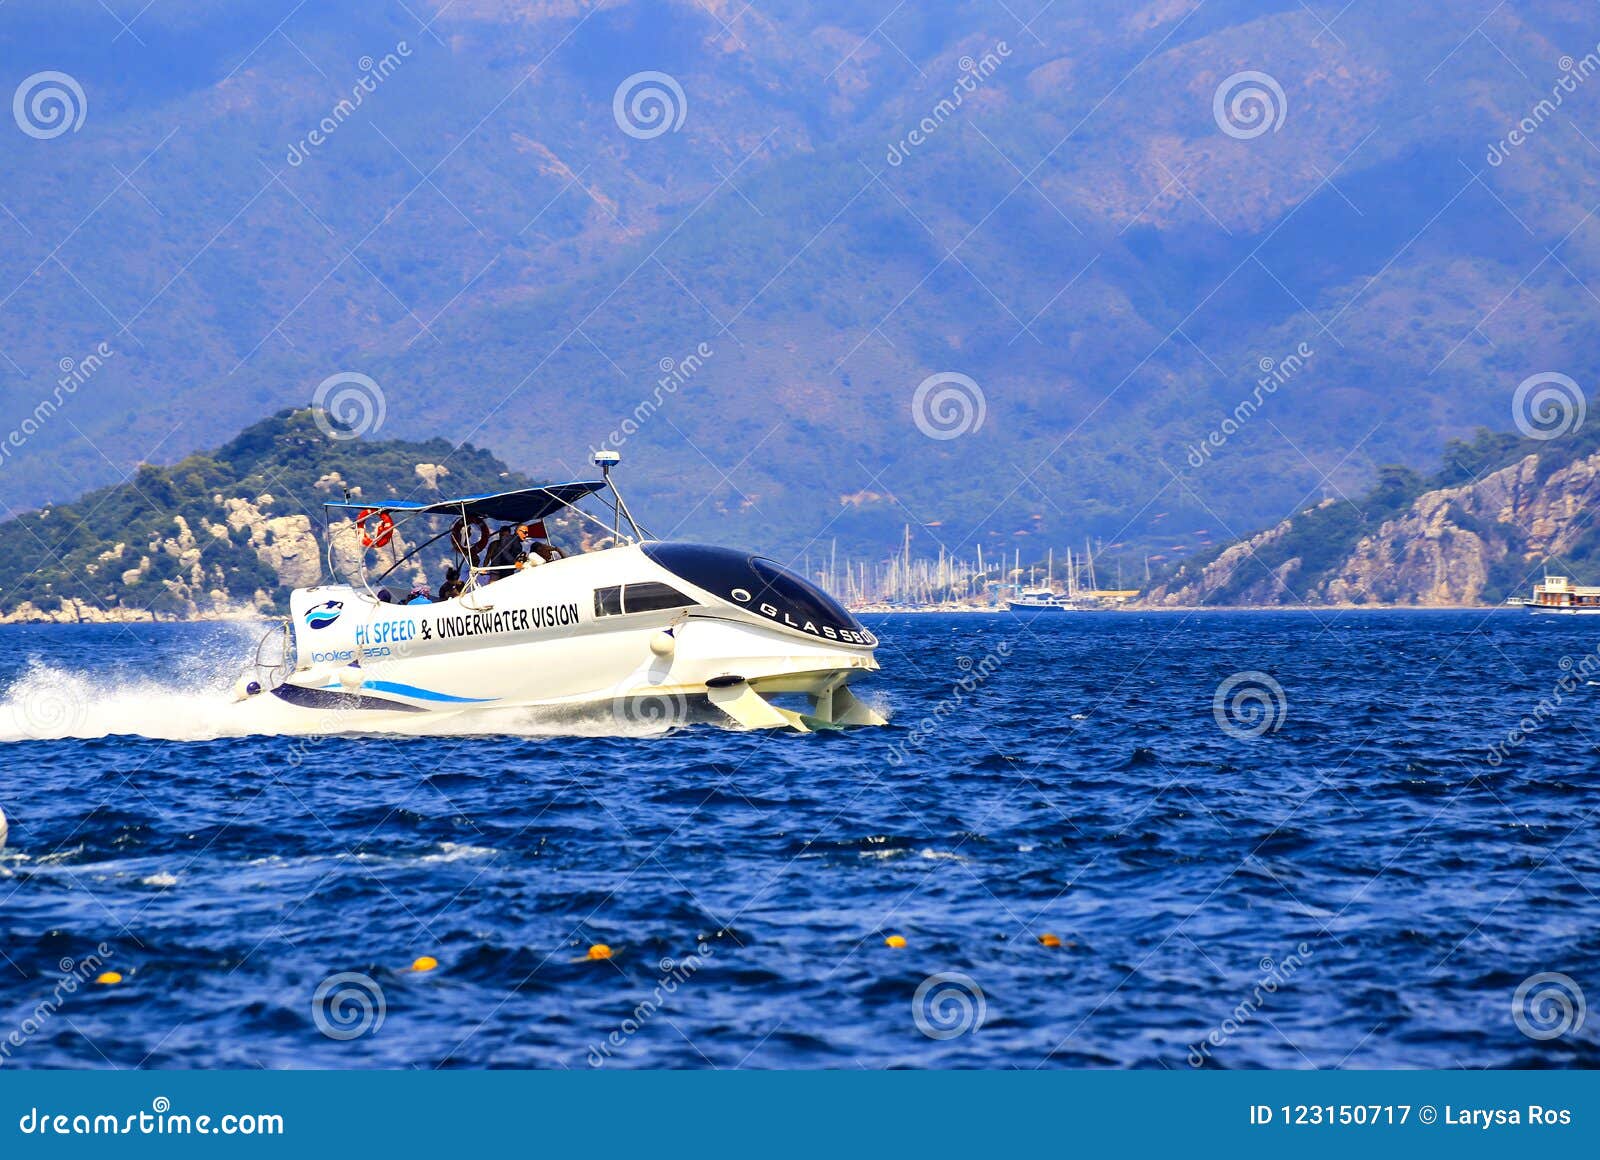 马尔马里斯港 土耳其在水下的翼的速度小船当乘客flating在水在爱琴海图库摄影片 图片包括有马尔马里斯港 土耳其 当乘客flating在水在爱琴海